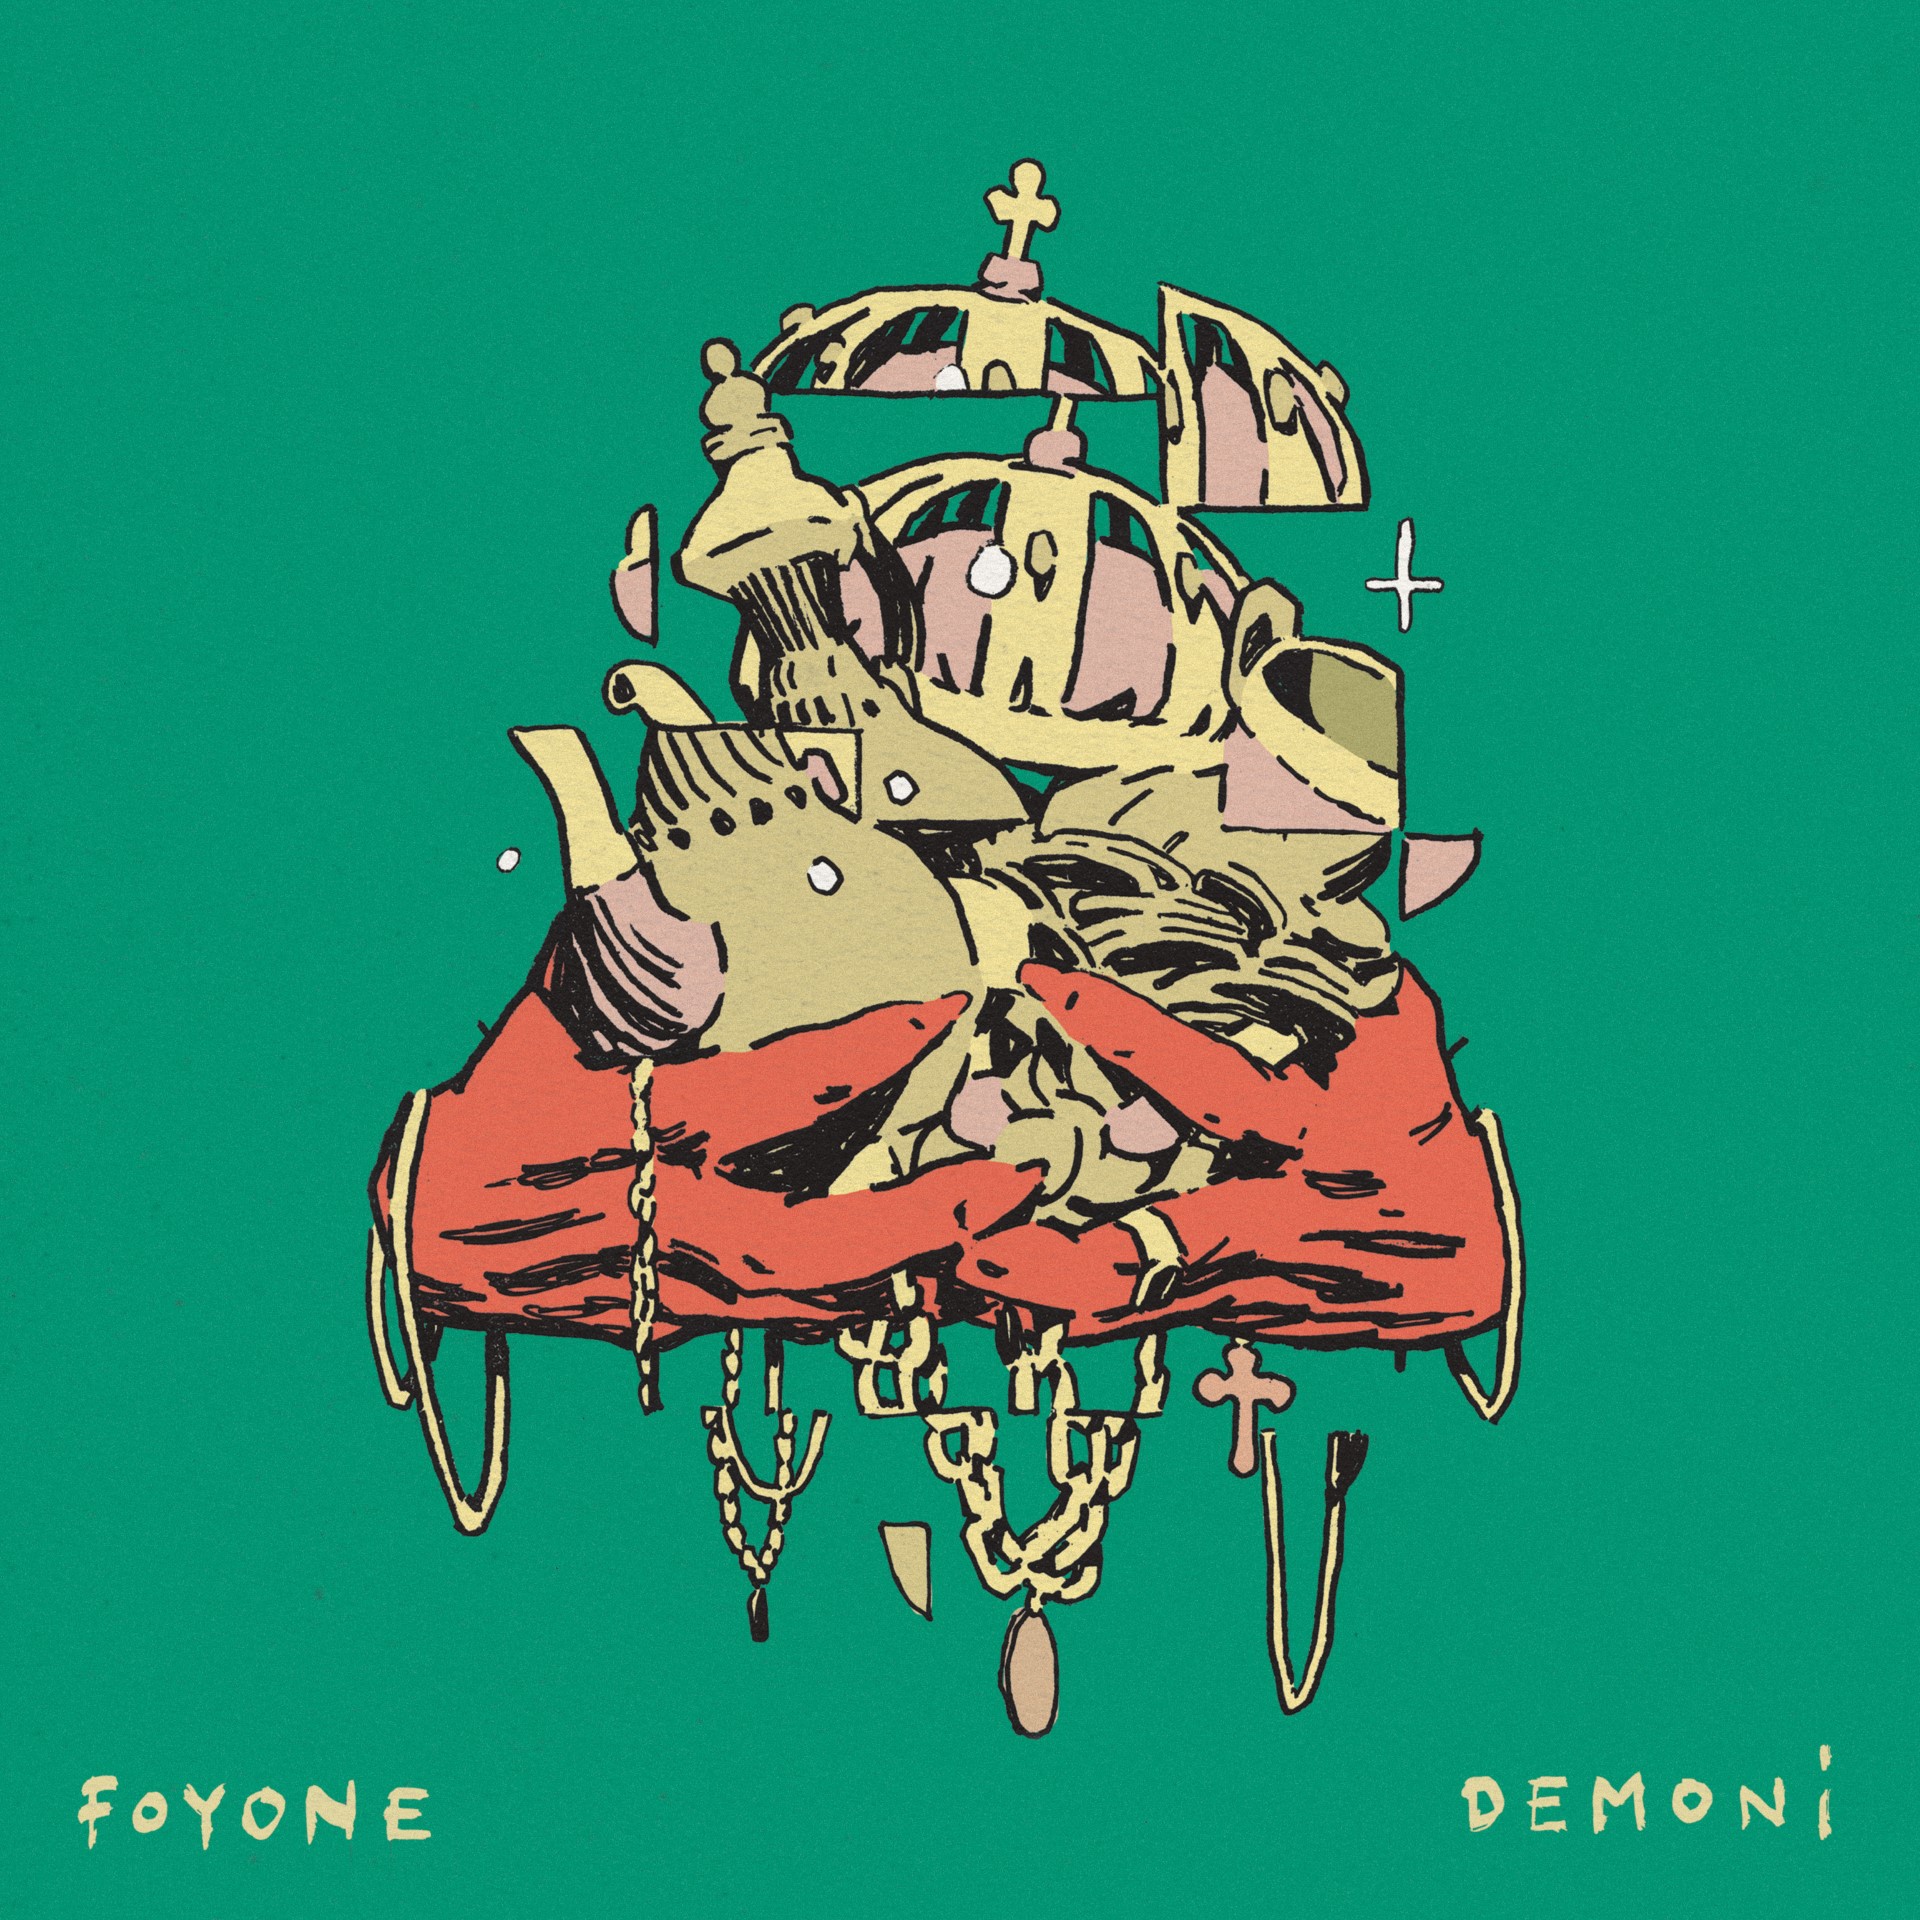 Foyone presenta ‘Demoni’, el disco que representa su reinvención en la escena